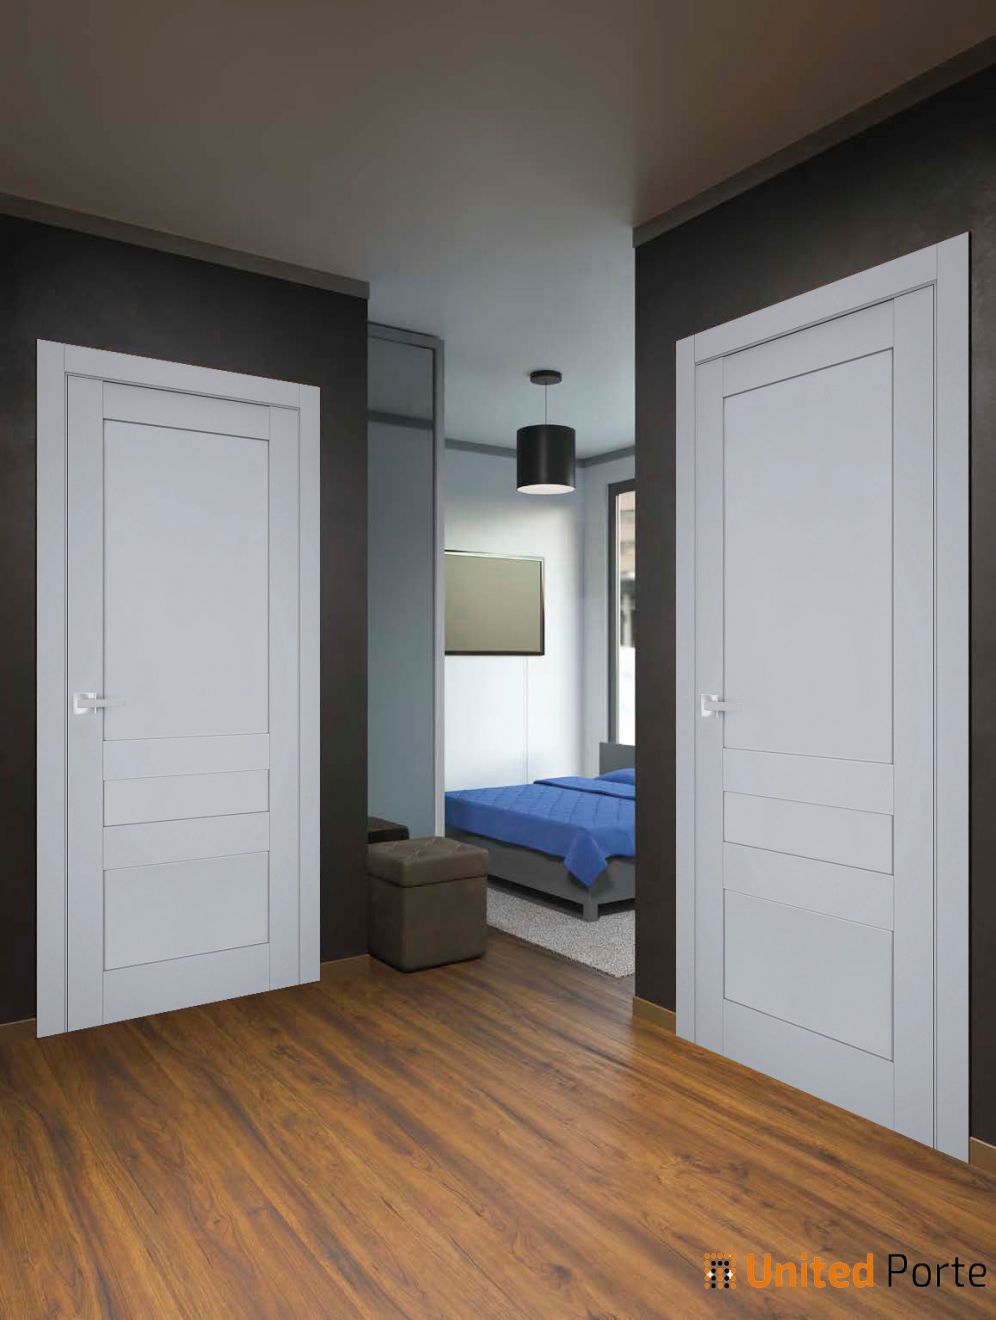 Swing Interior Solid French Door with Decorative Panels | Bathroom Bedroom Sturdy Doors | Buy Doors Online